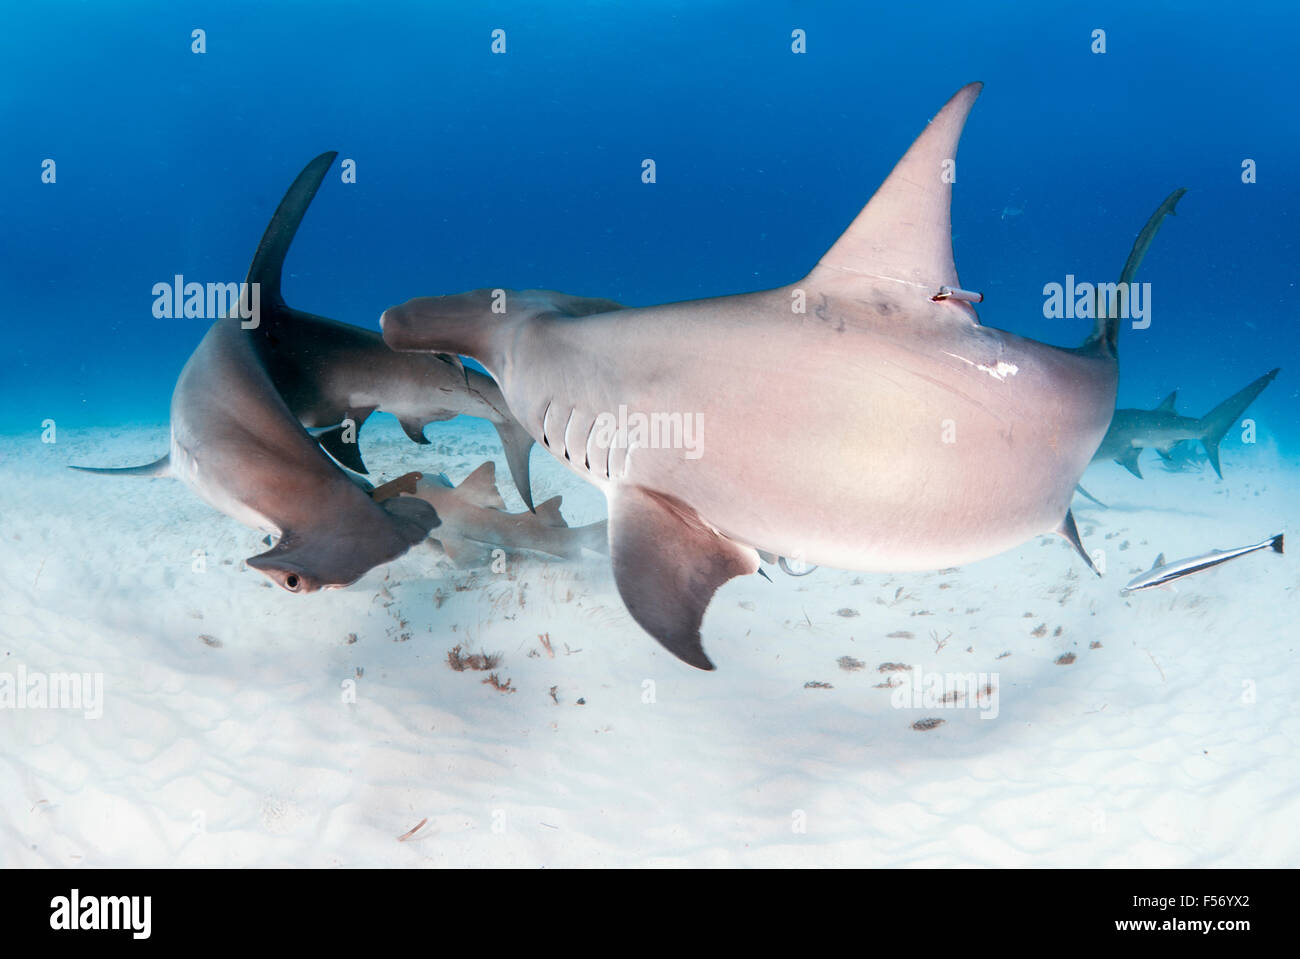 Grand requin marteau, Sphyrna mokarran, Bimini, Bahamas, mer des Caraïbes, Océan Atlantique Banque D'Images